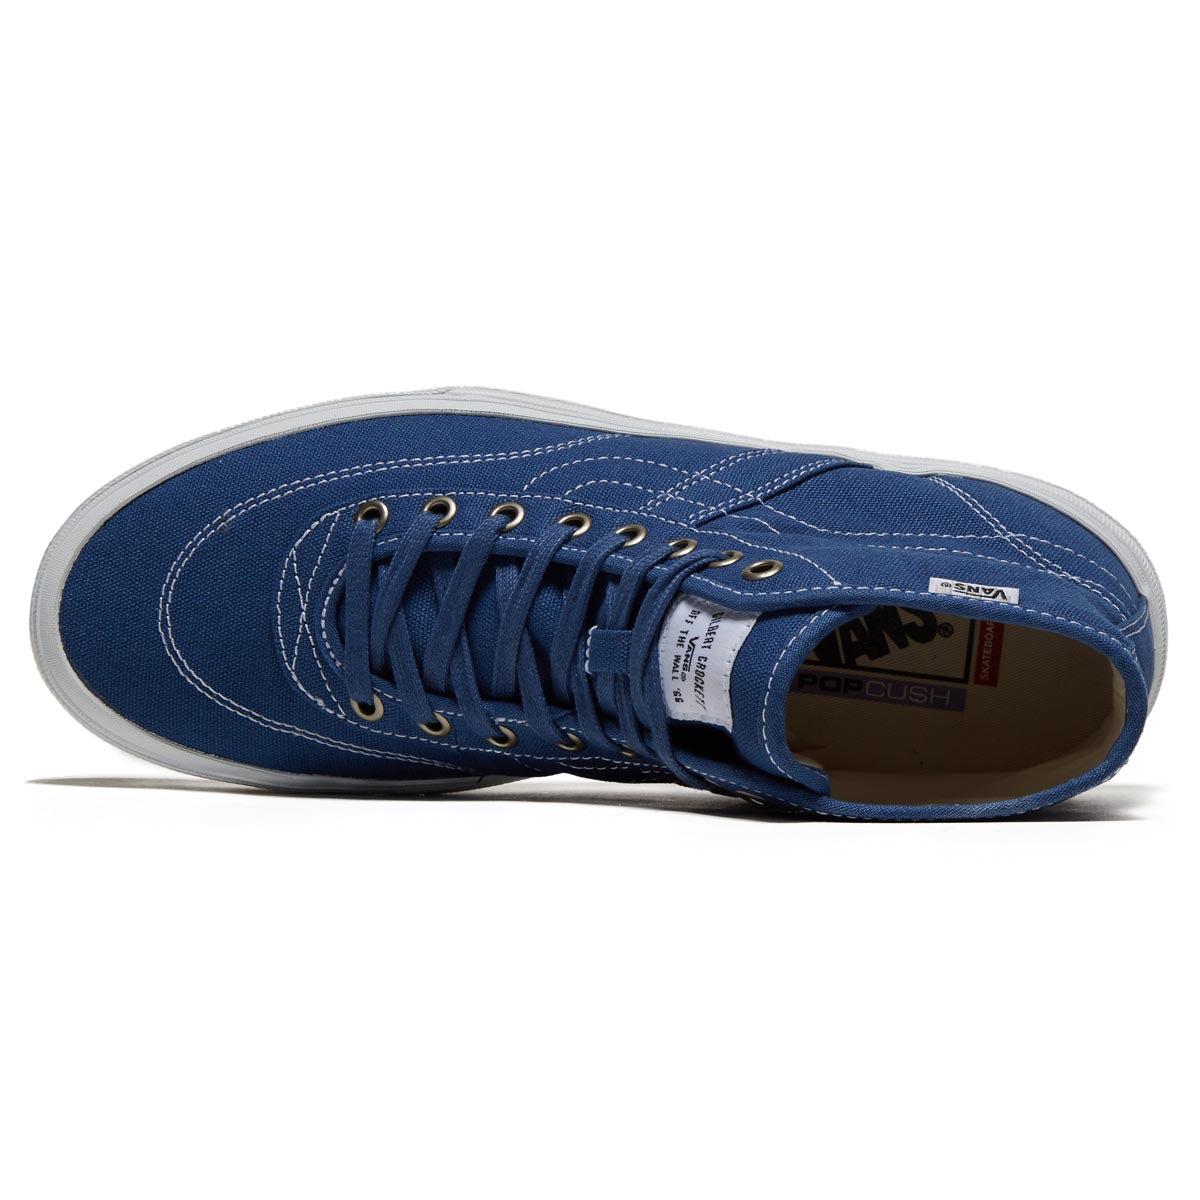 Vans Crockett High Decon Shoes - Canvas Blue/White image 3